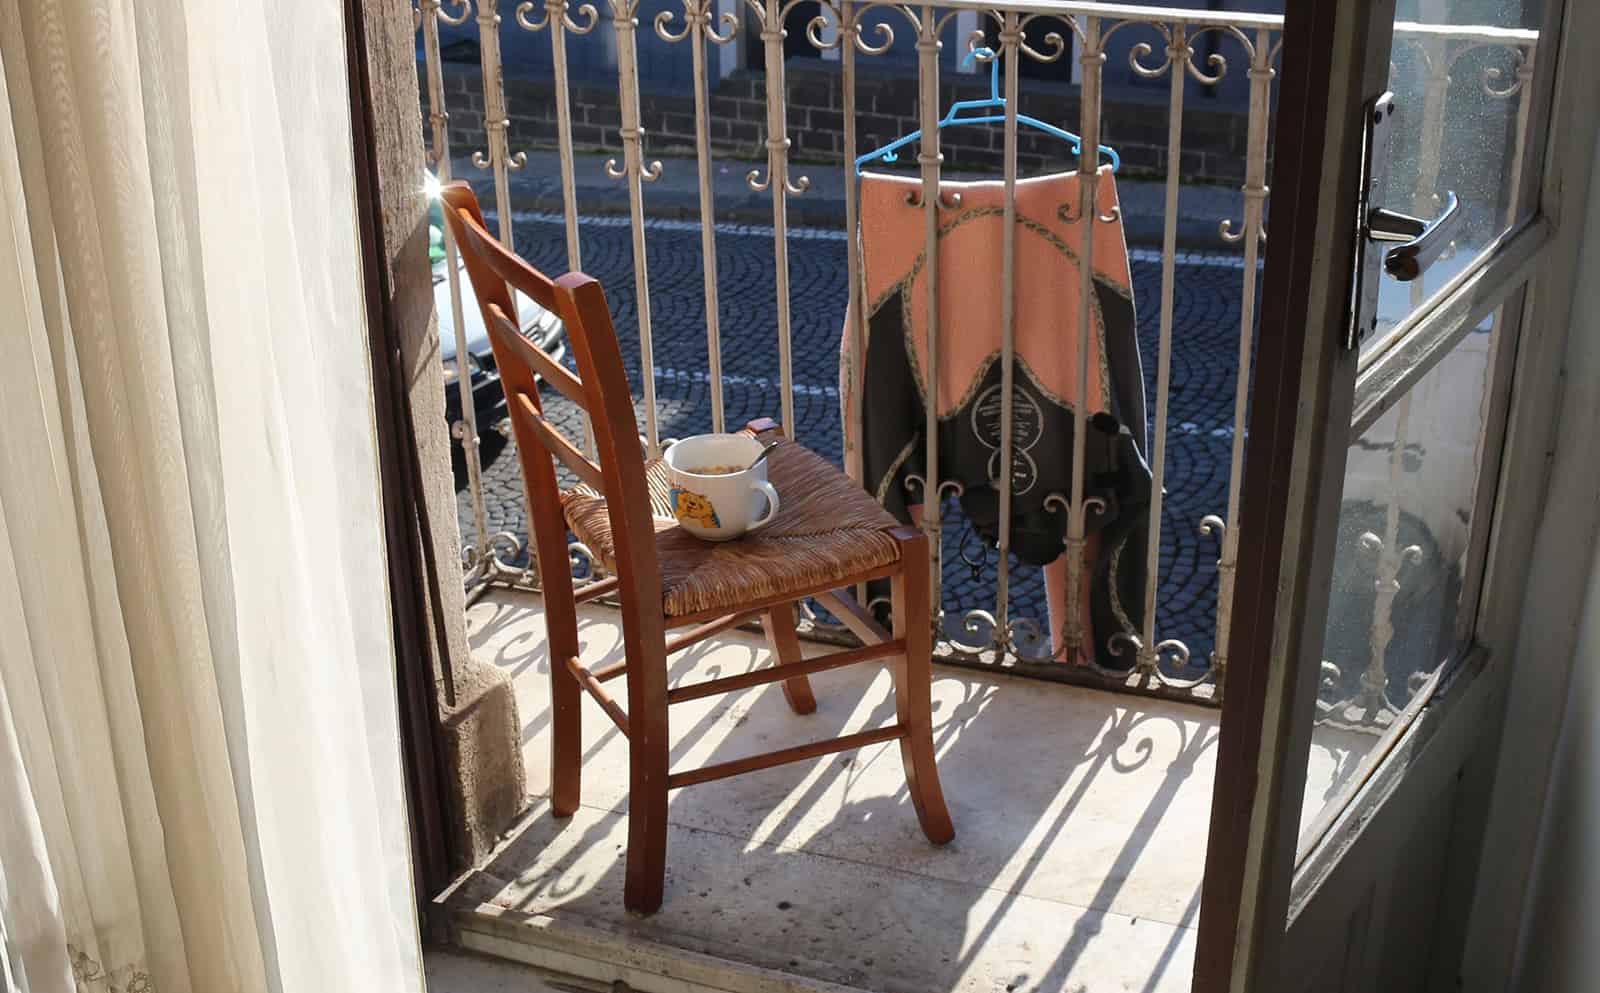 Morning, breakfast on the balcony in Catania.